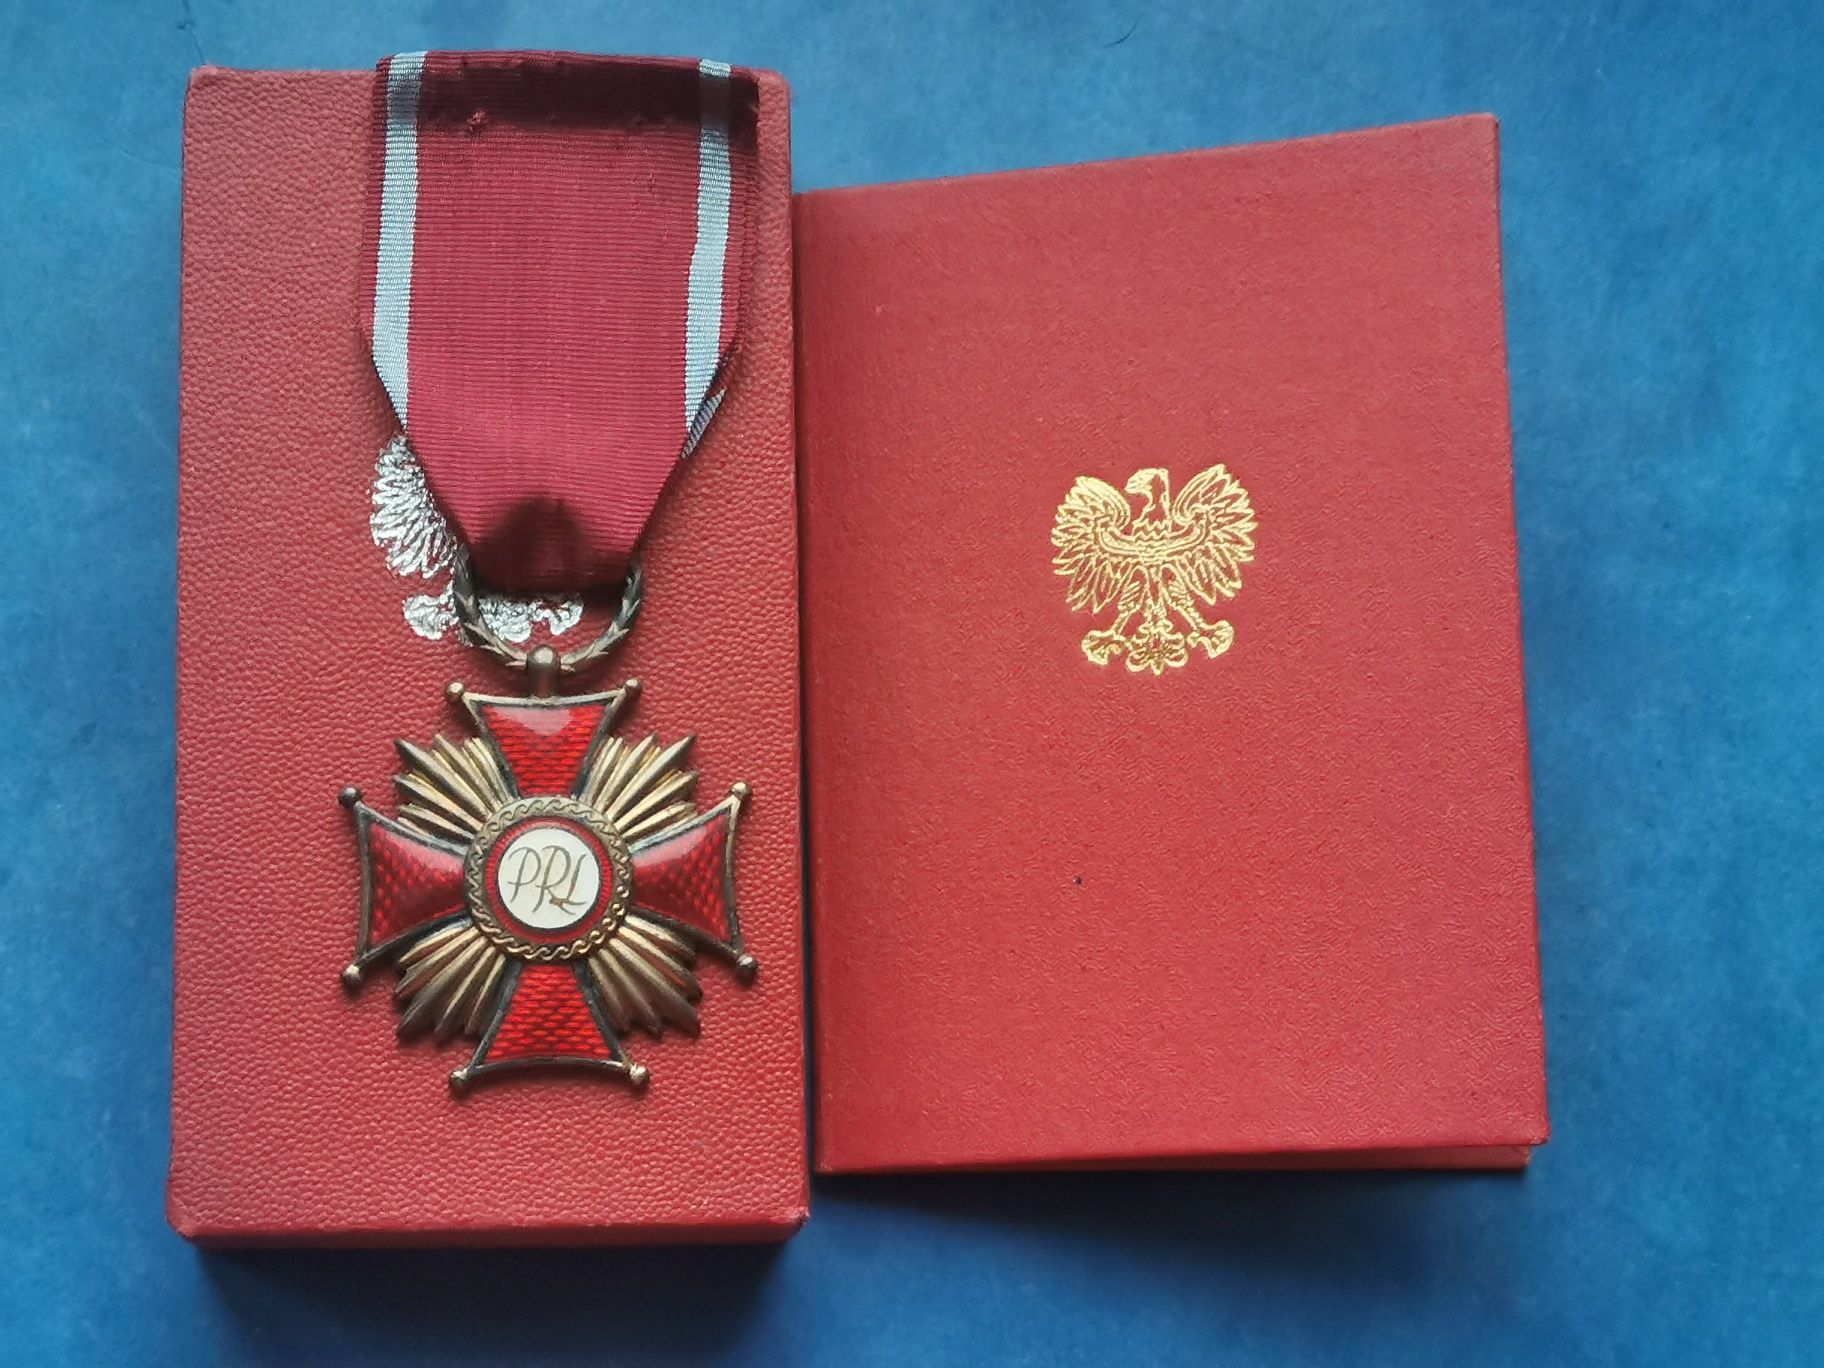 Srebrny krzyż zasługi PRL z nadaniem 1978r.